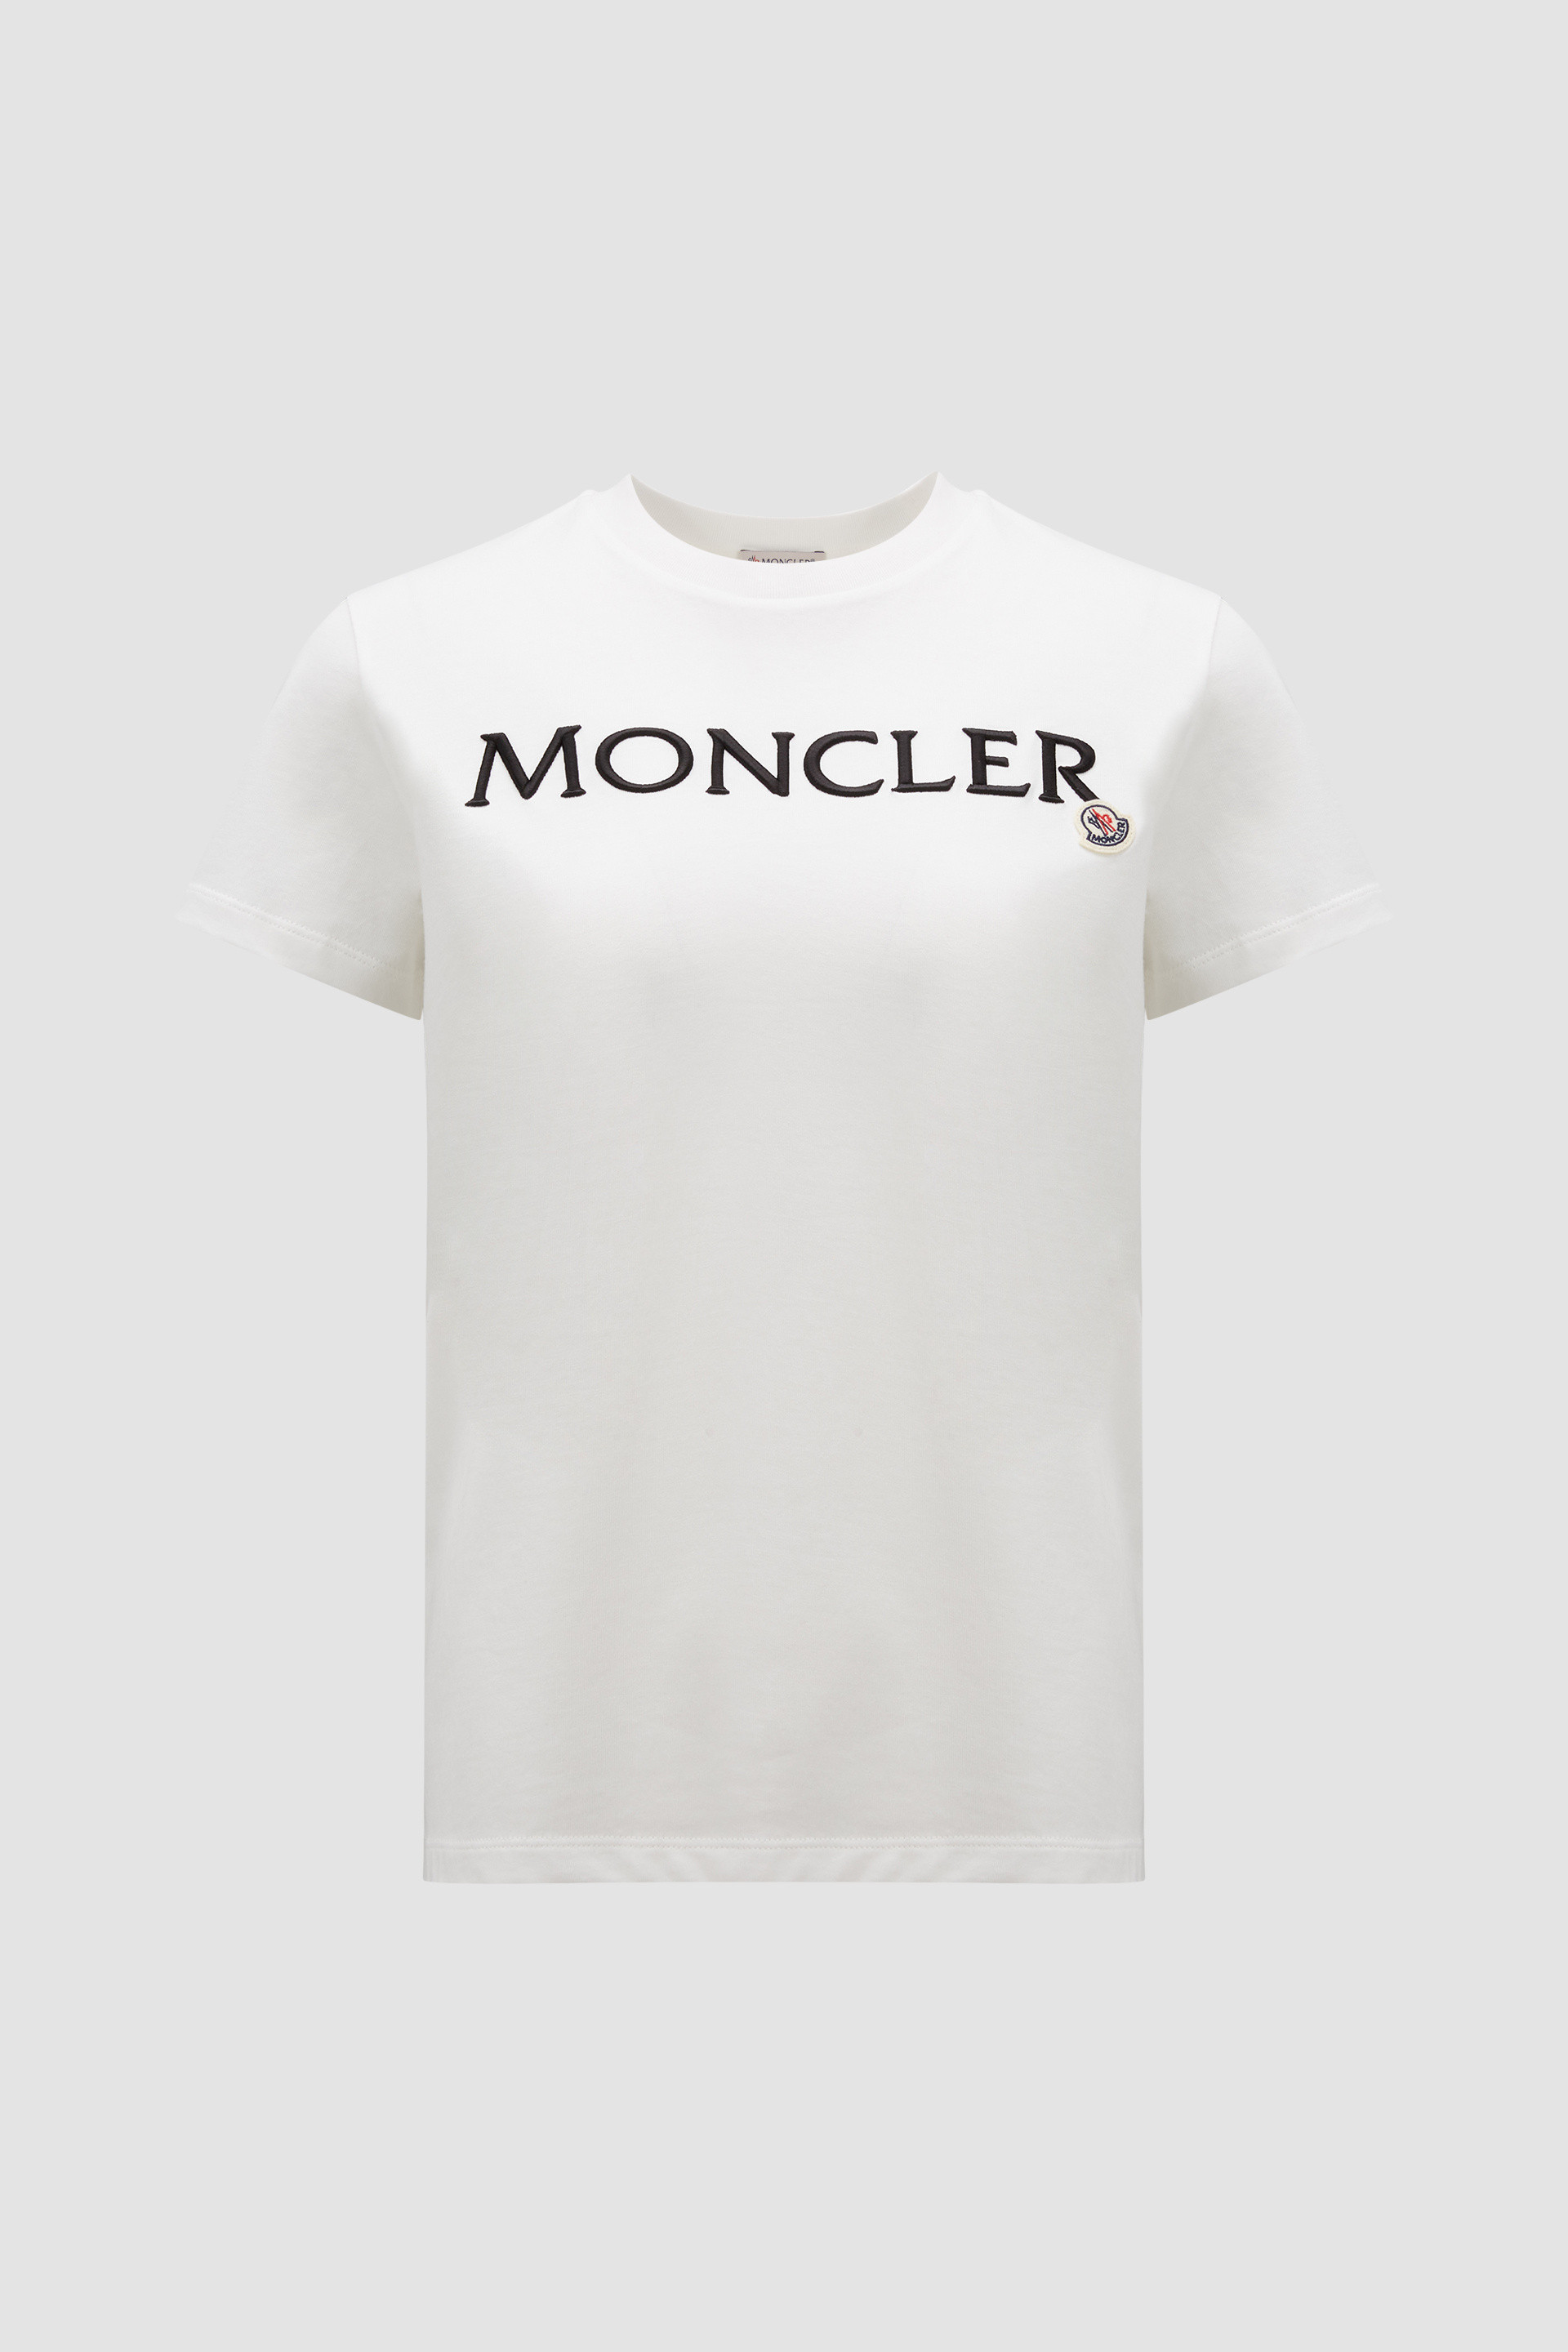 上品 モンクレール 新品未使用 L オフホワイト Tシャツ ロゴ トップス 